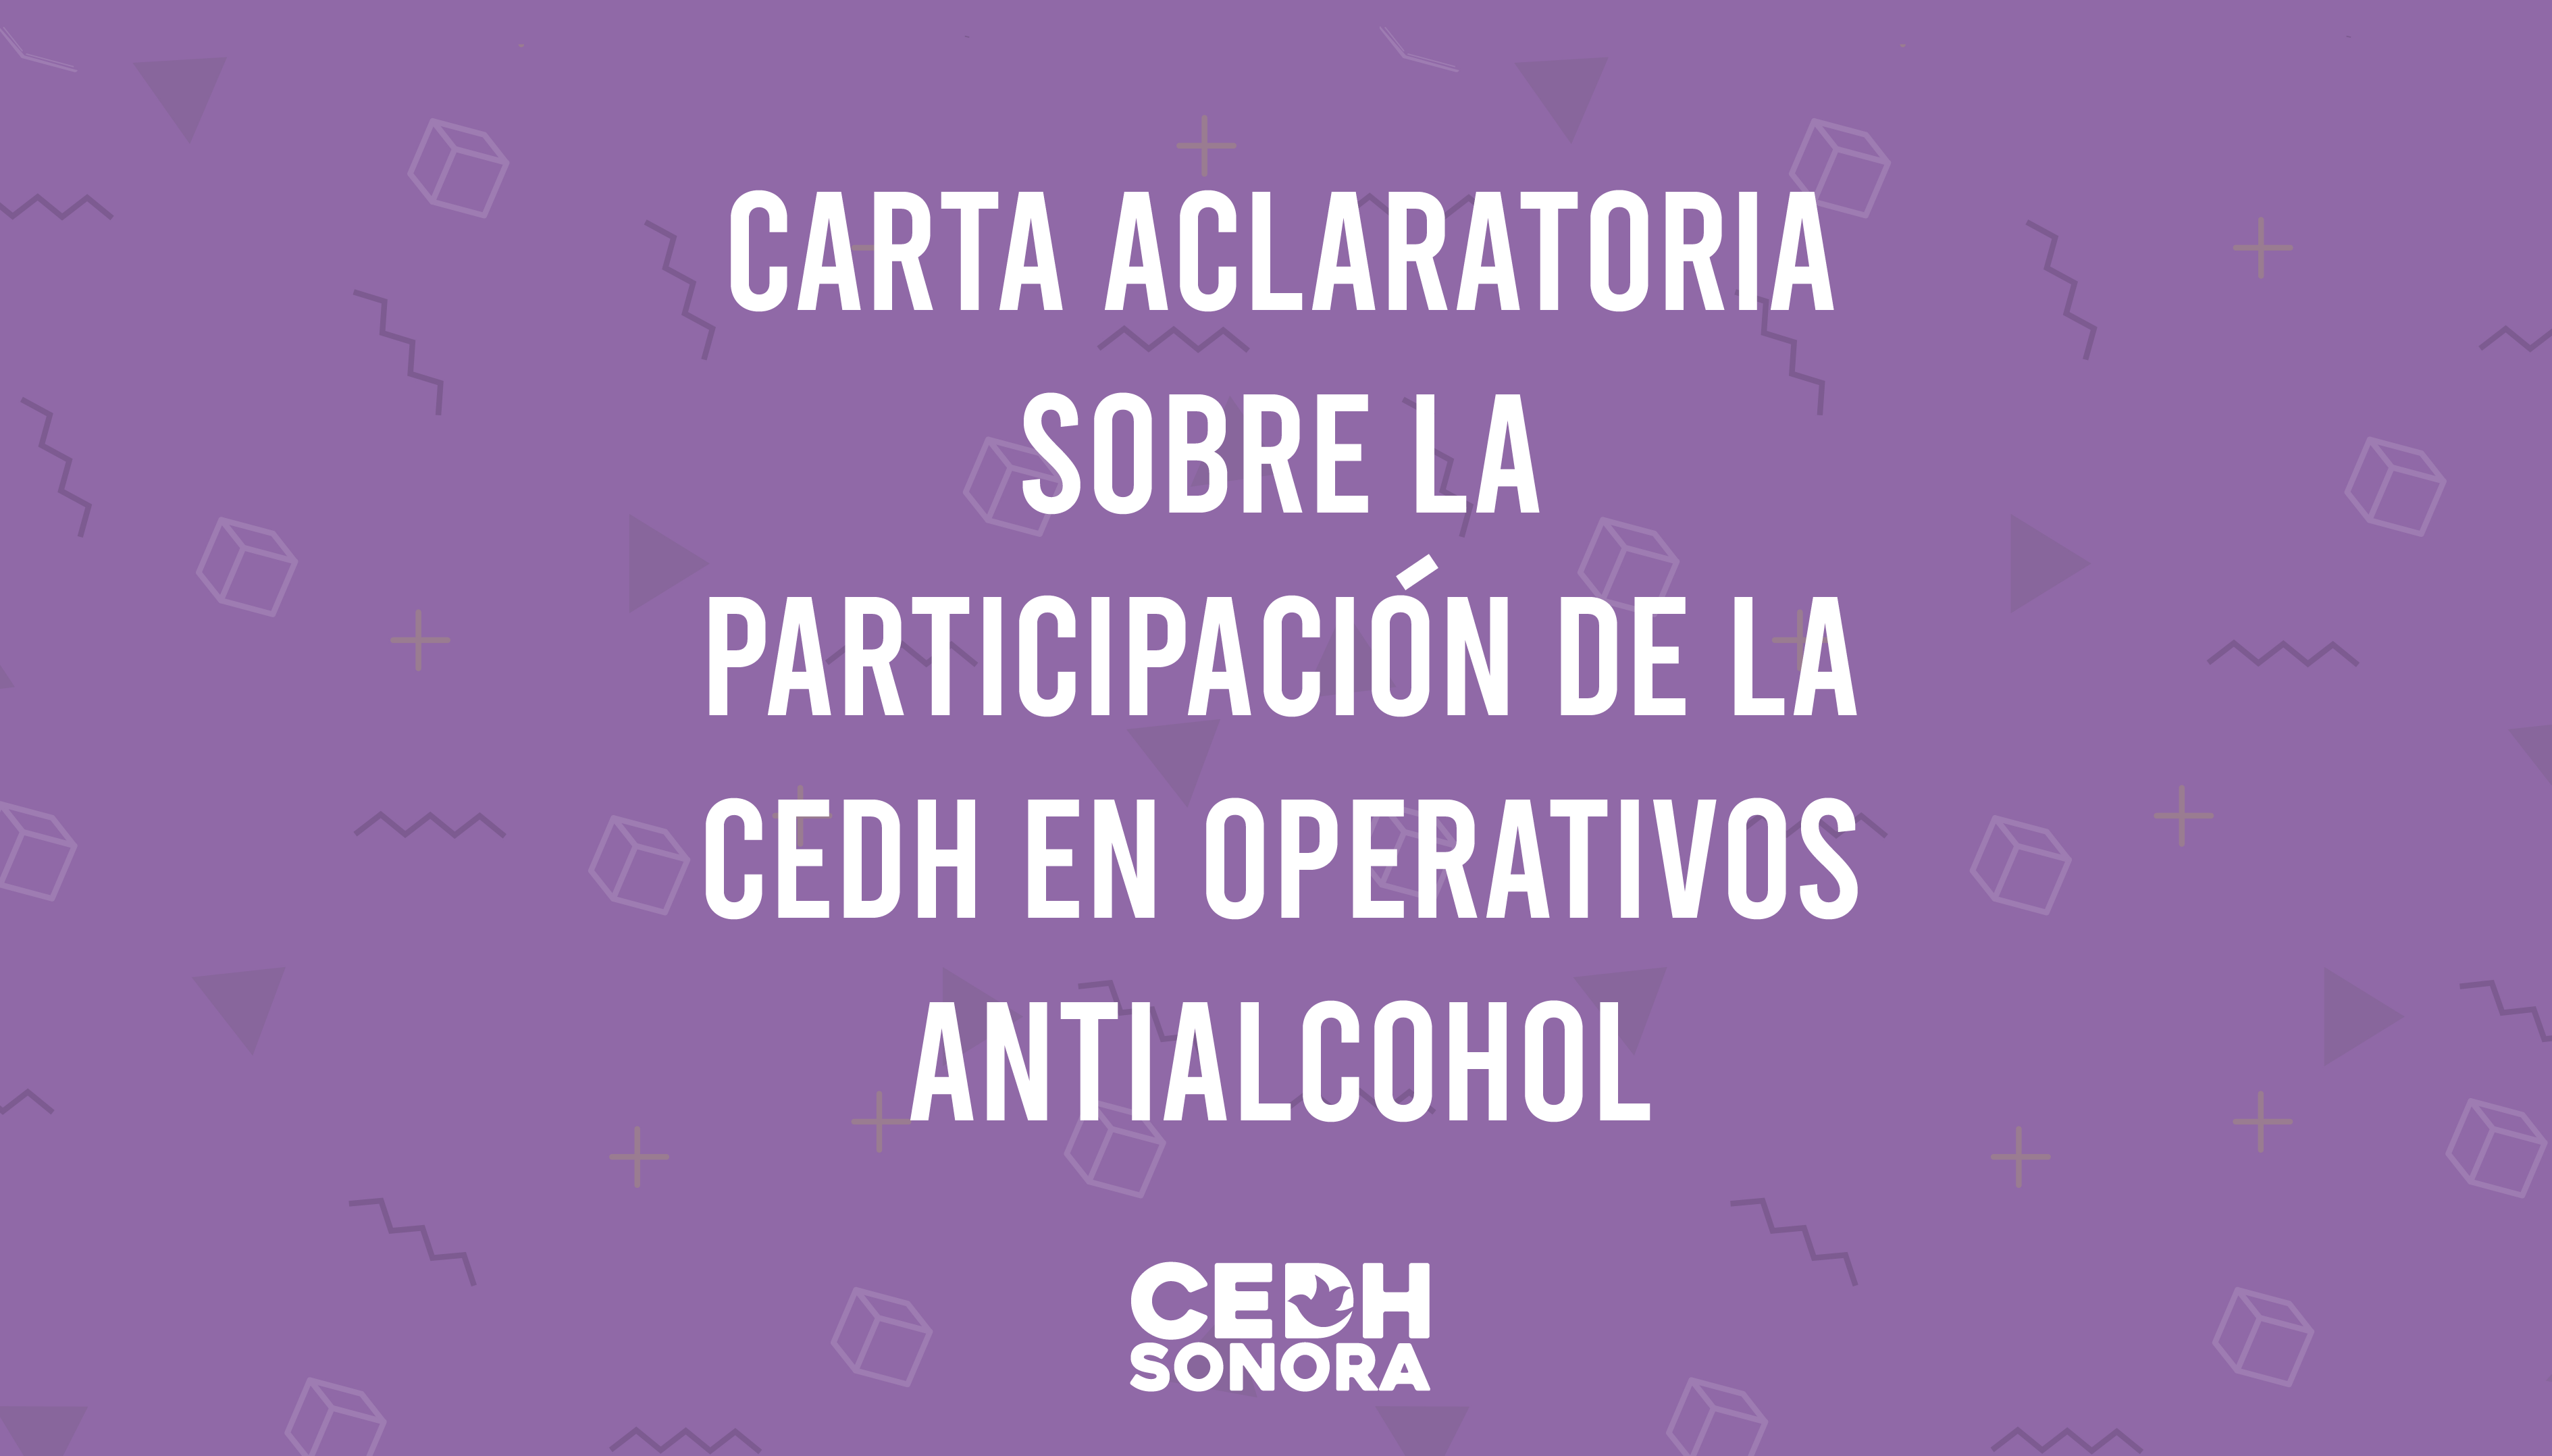 Carta aclaratoria sobre la participación de la CEDH en operativos antialcohol